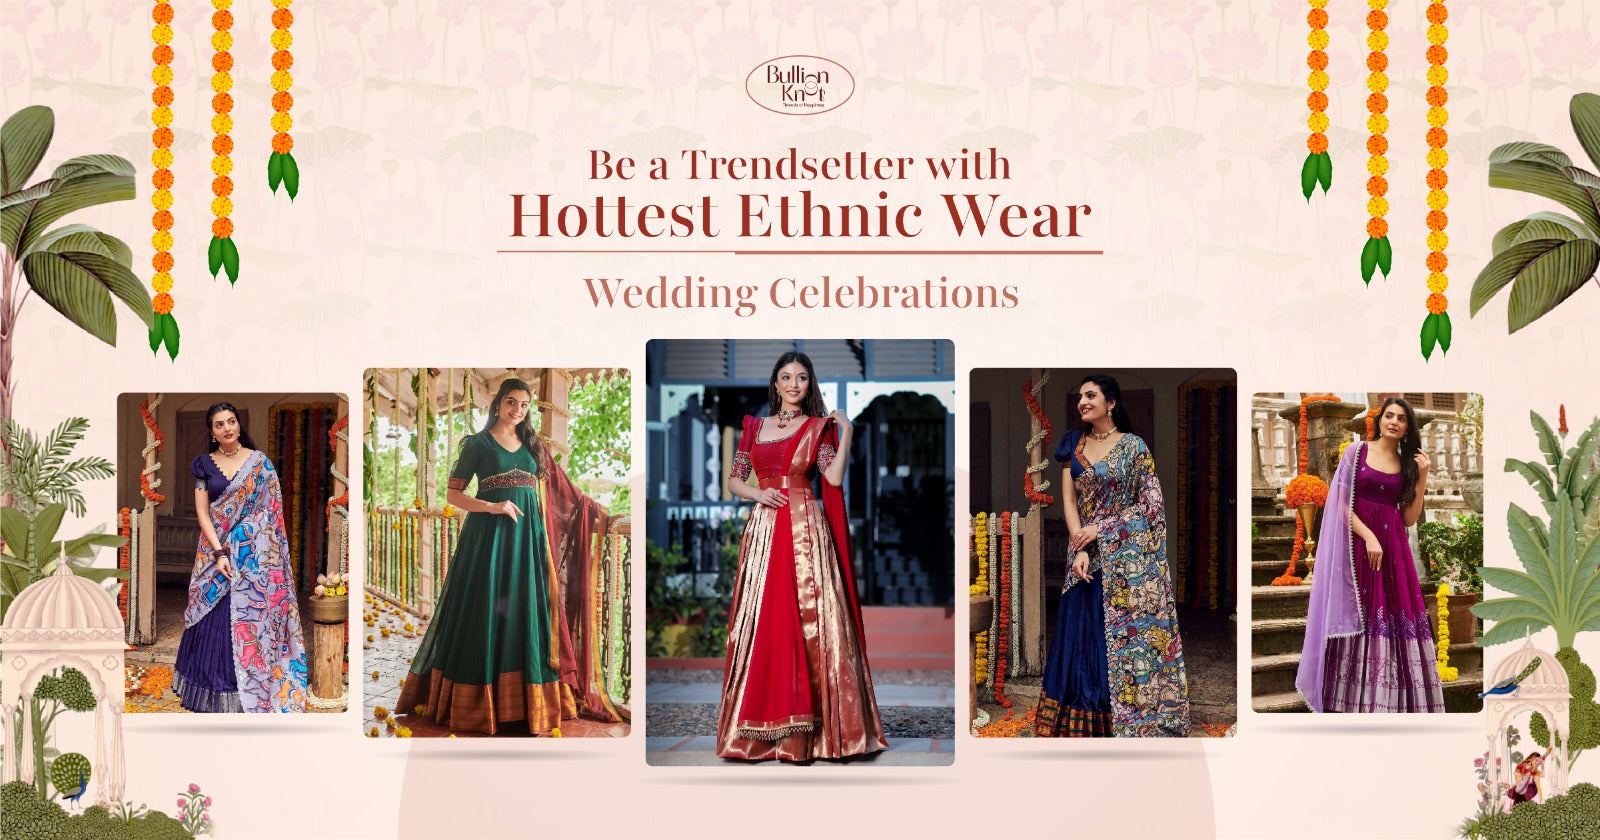 bullion-knot-hottest-ethnic-wear-for-wedding-celebrations